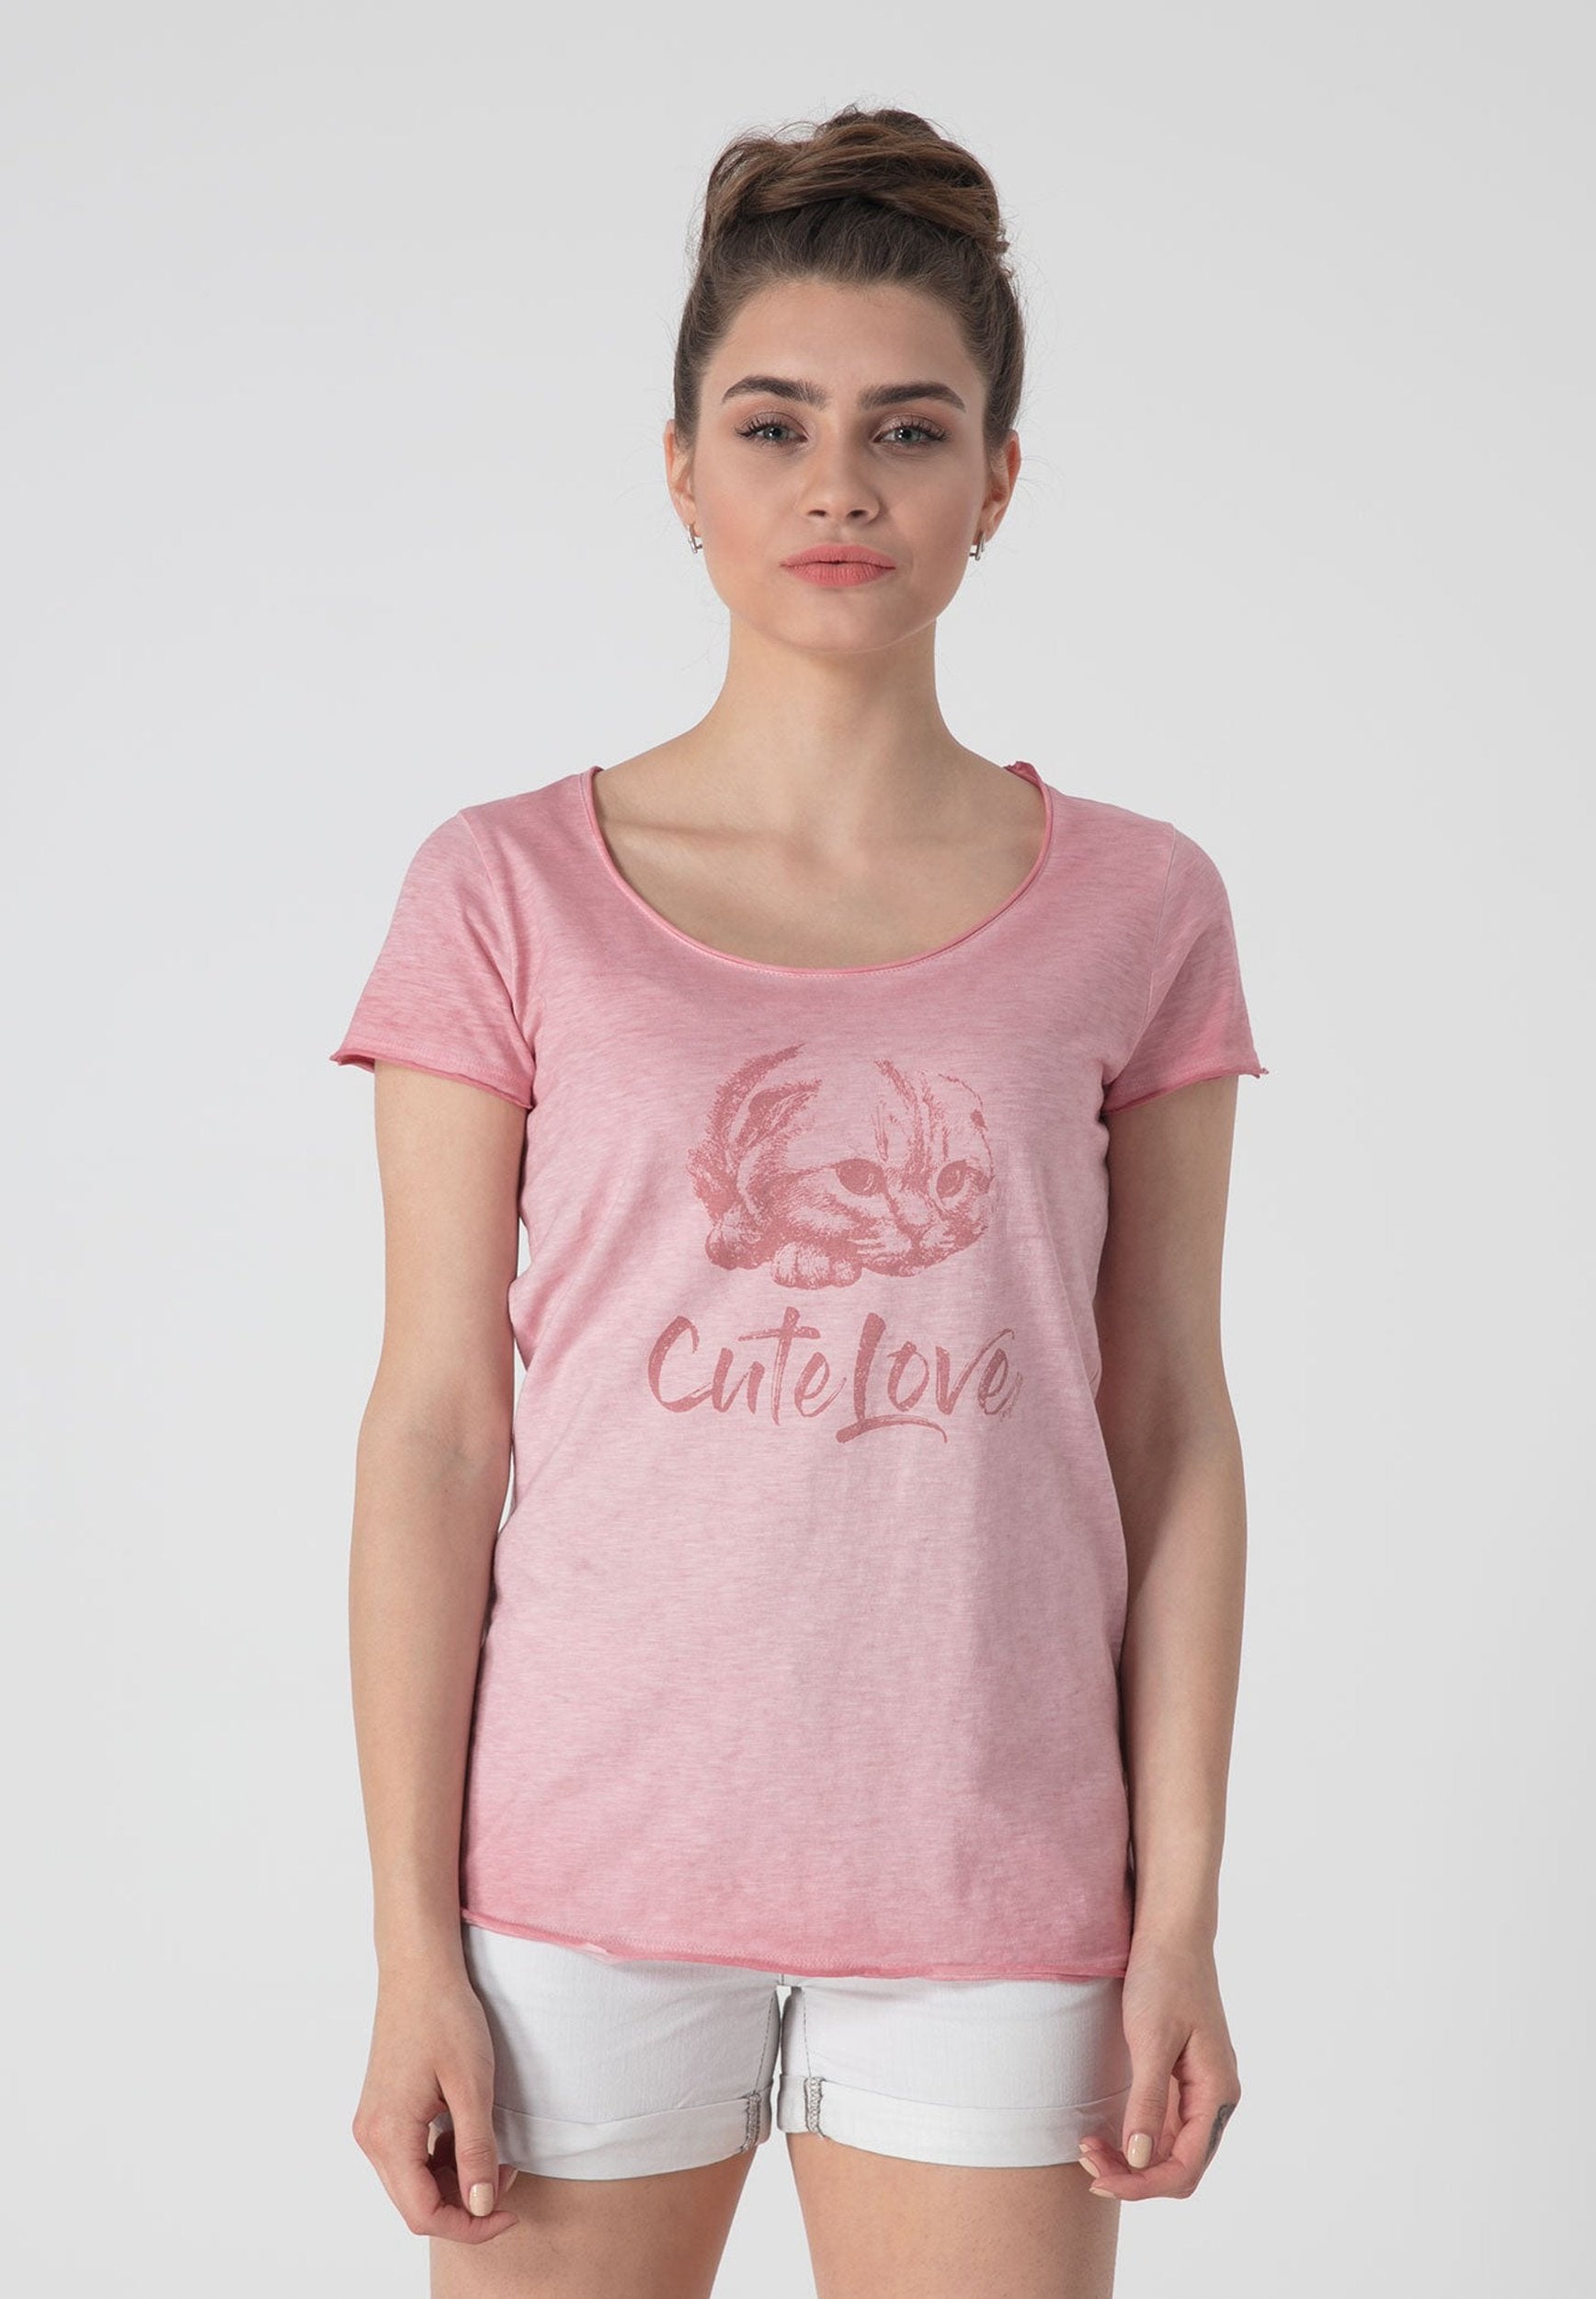 Bedrucktes Katzen T-Shirt aus Bio-Baumwolle